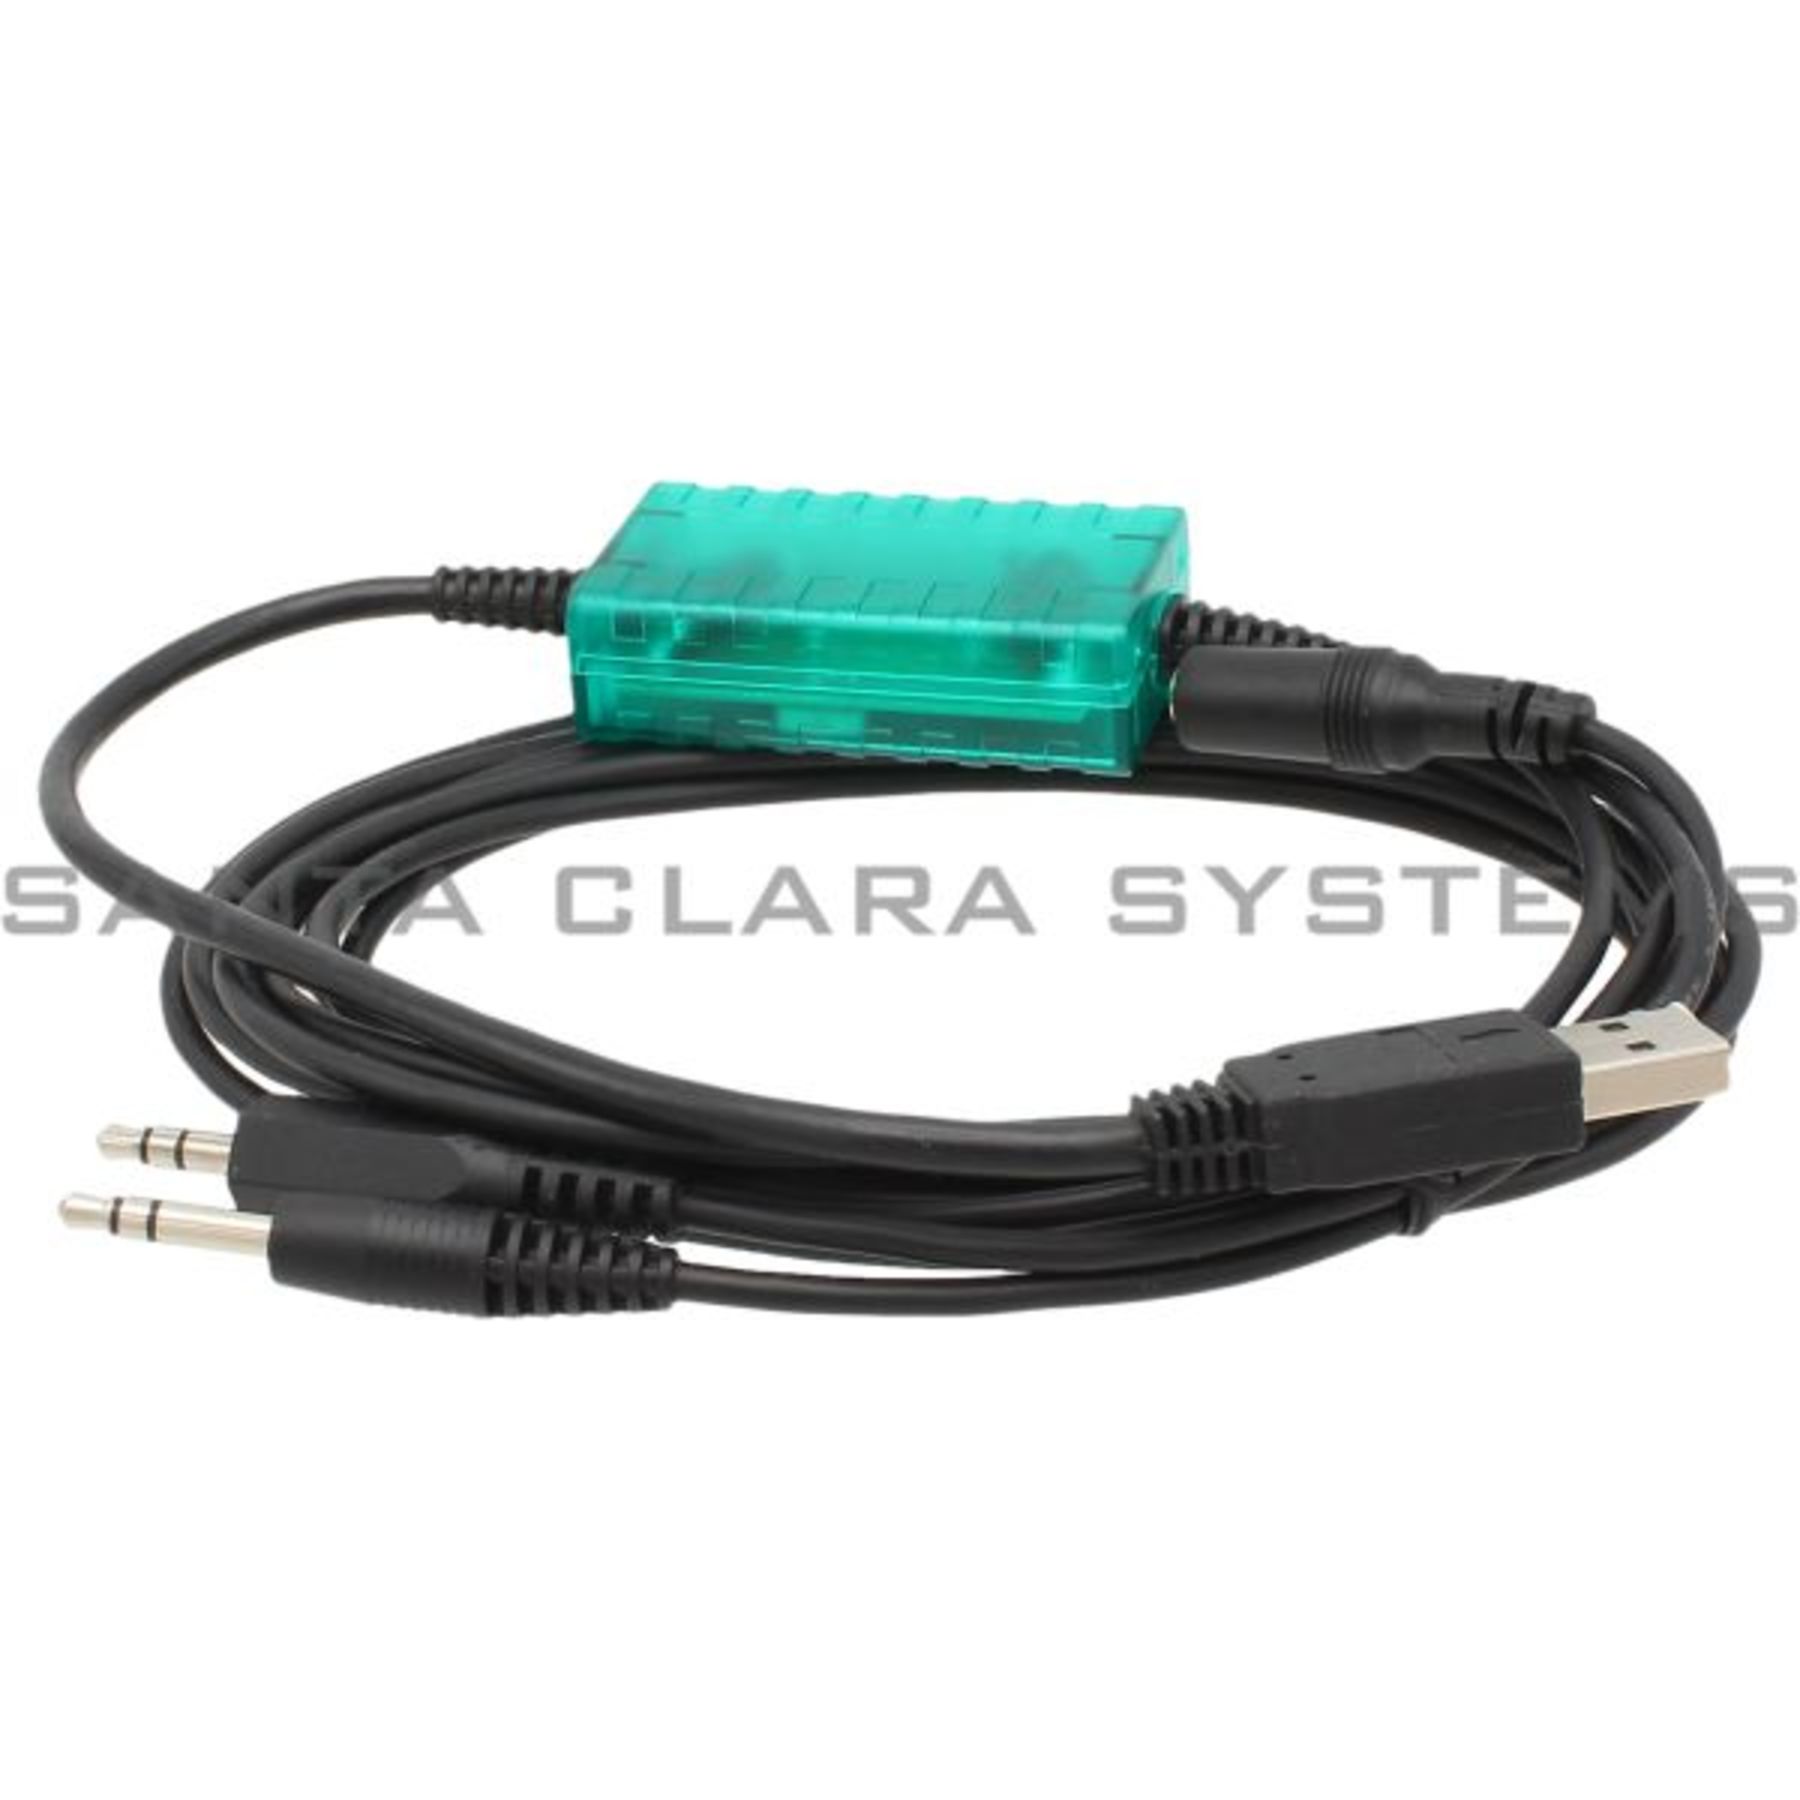 intelectual Comparación cobre Pepperl+Fuchs USB Interface Cable K-ADP-USB En stock y listos para enviar -  Santa Clara Systems